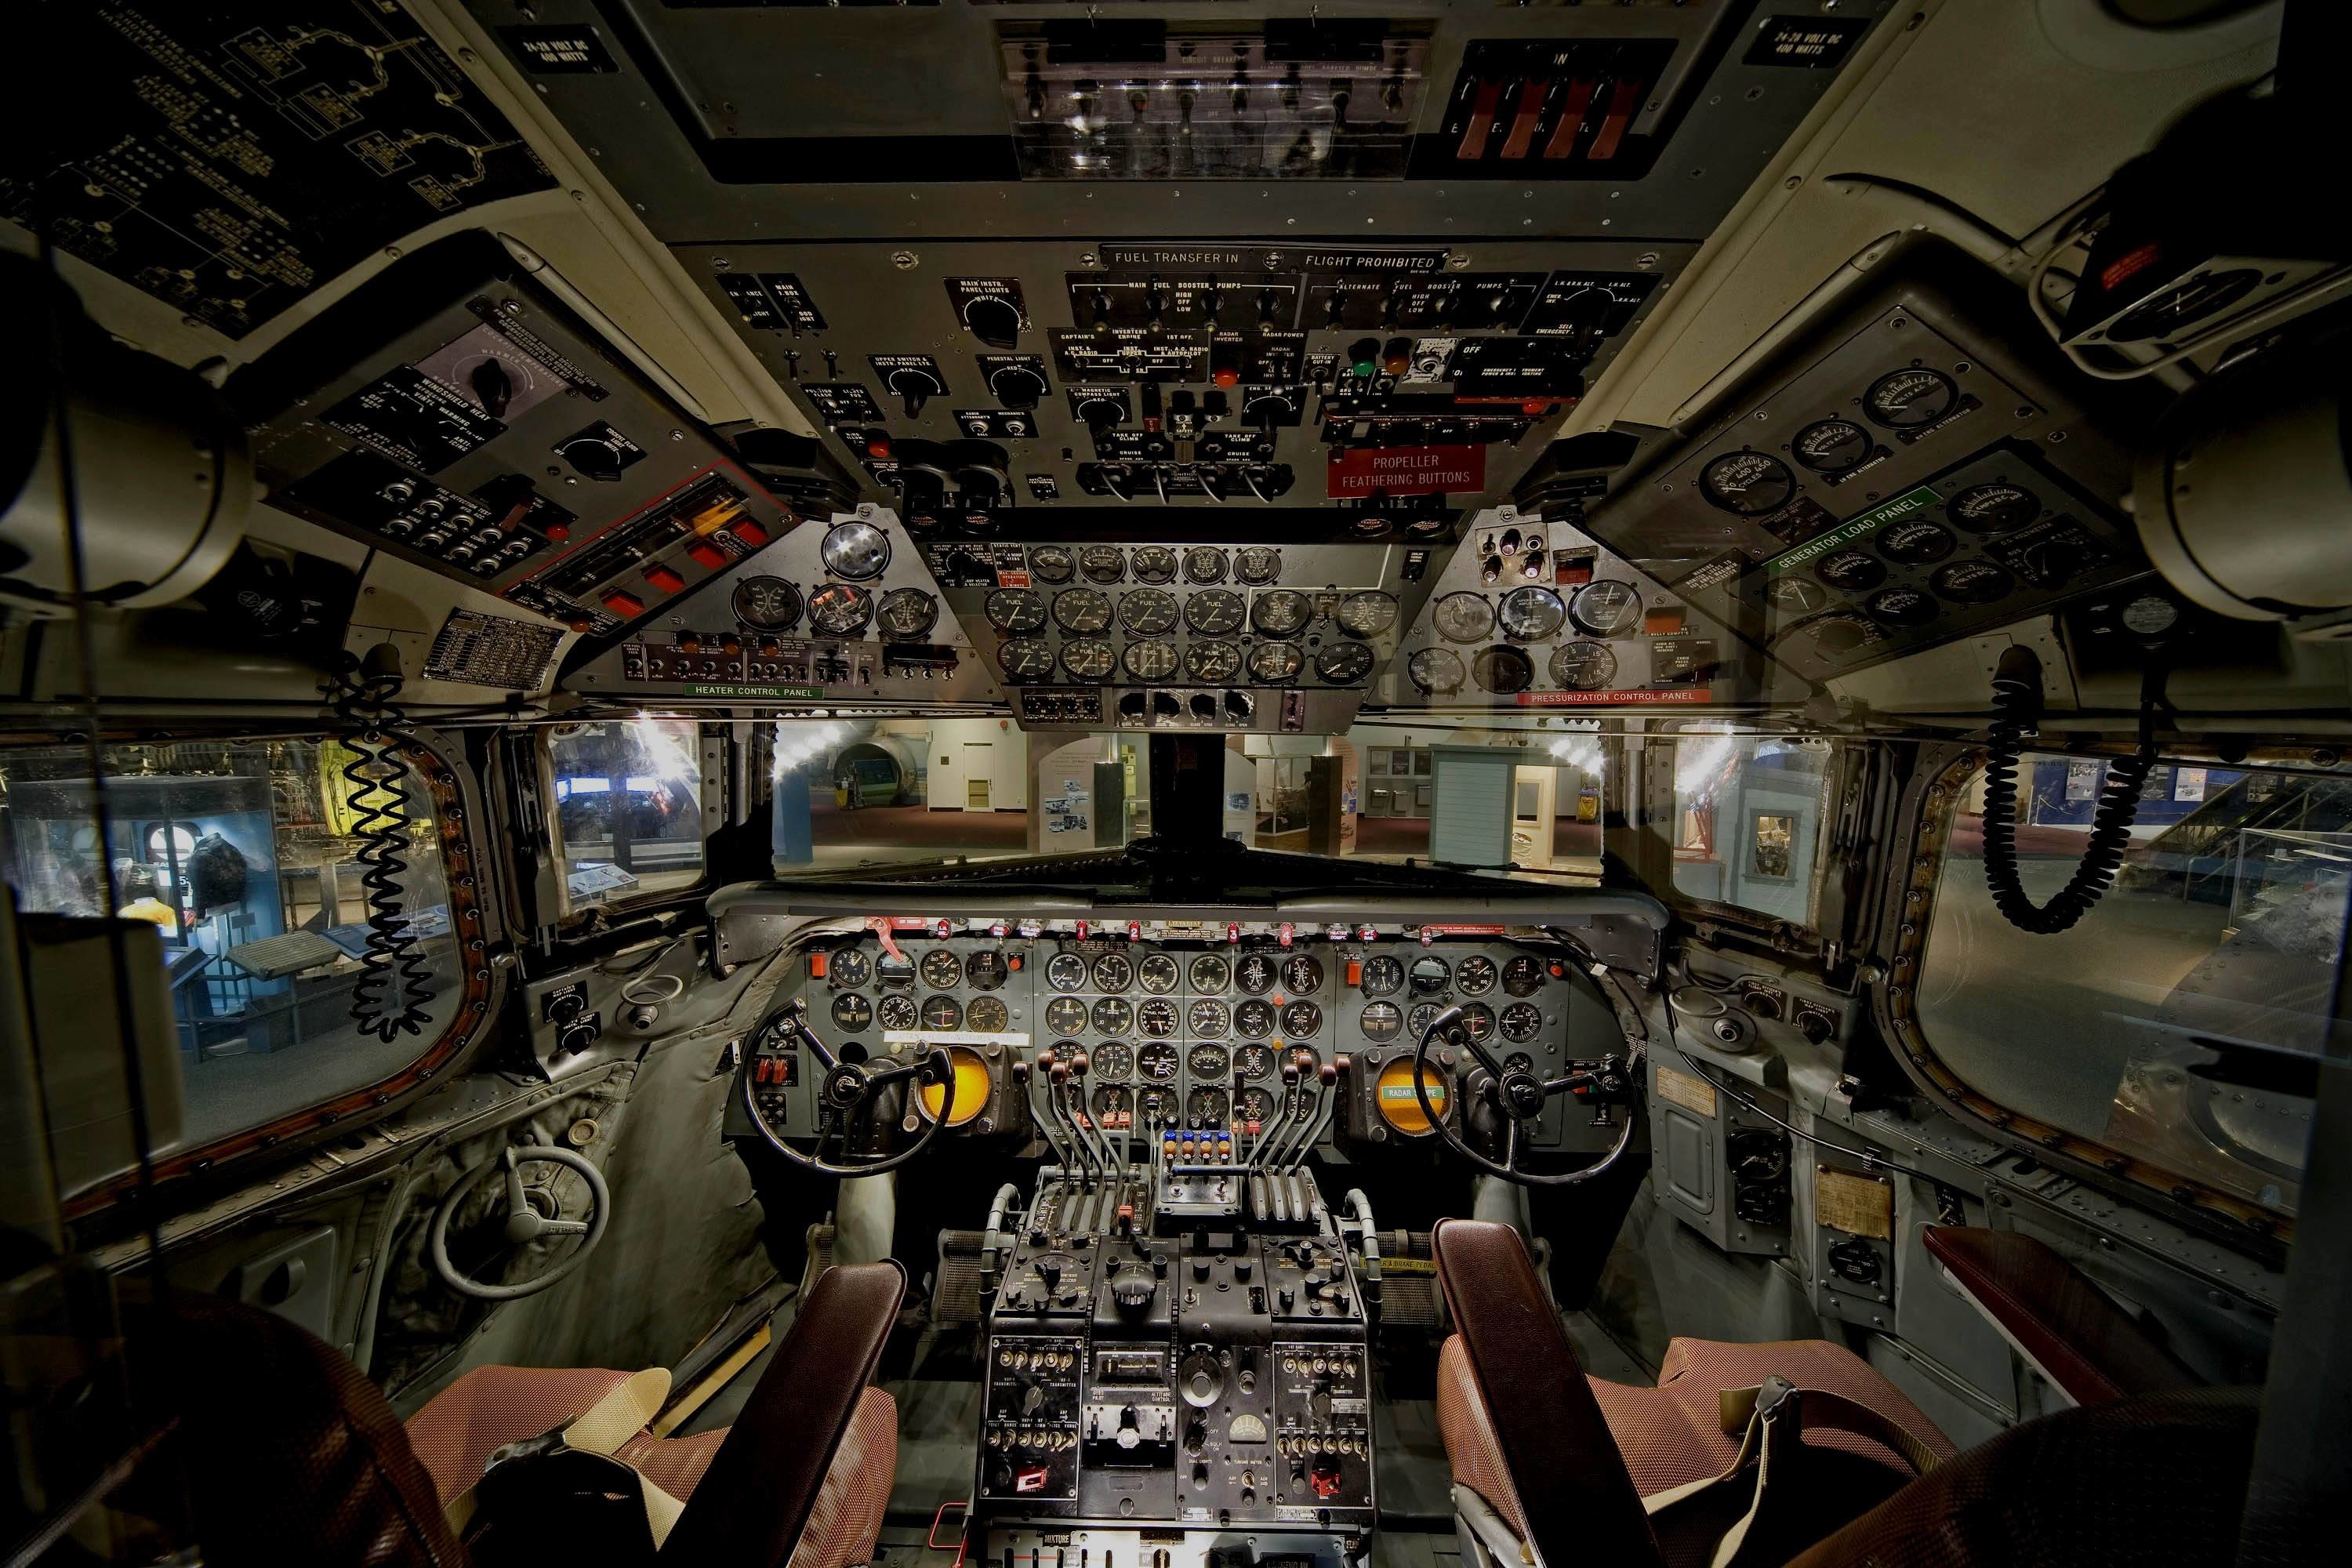 3000x2000 Fonds d'Ã©cran Cockpit : tous les wallpapers Cockpit